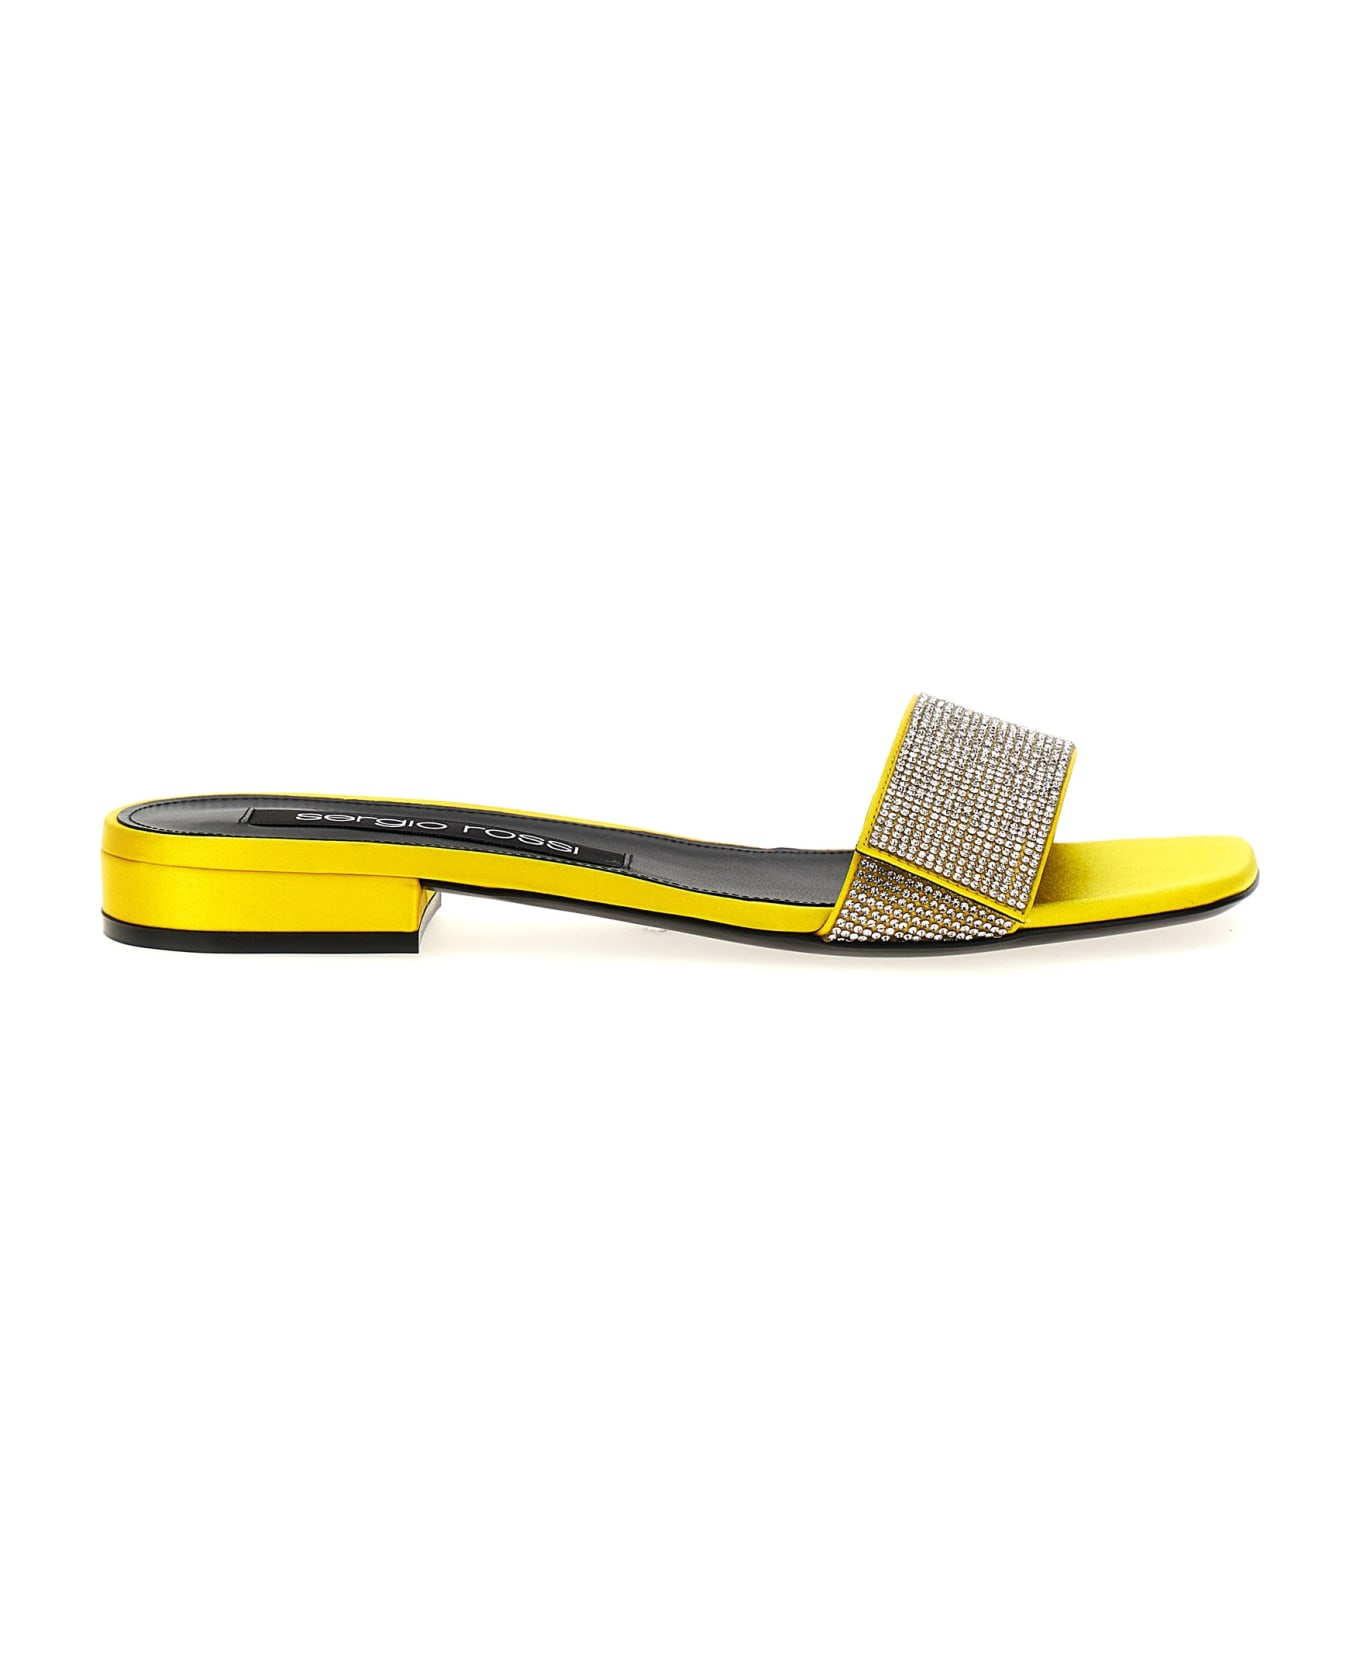 Sergio Rossi 'paris' Sandals - Yellow サンダル